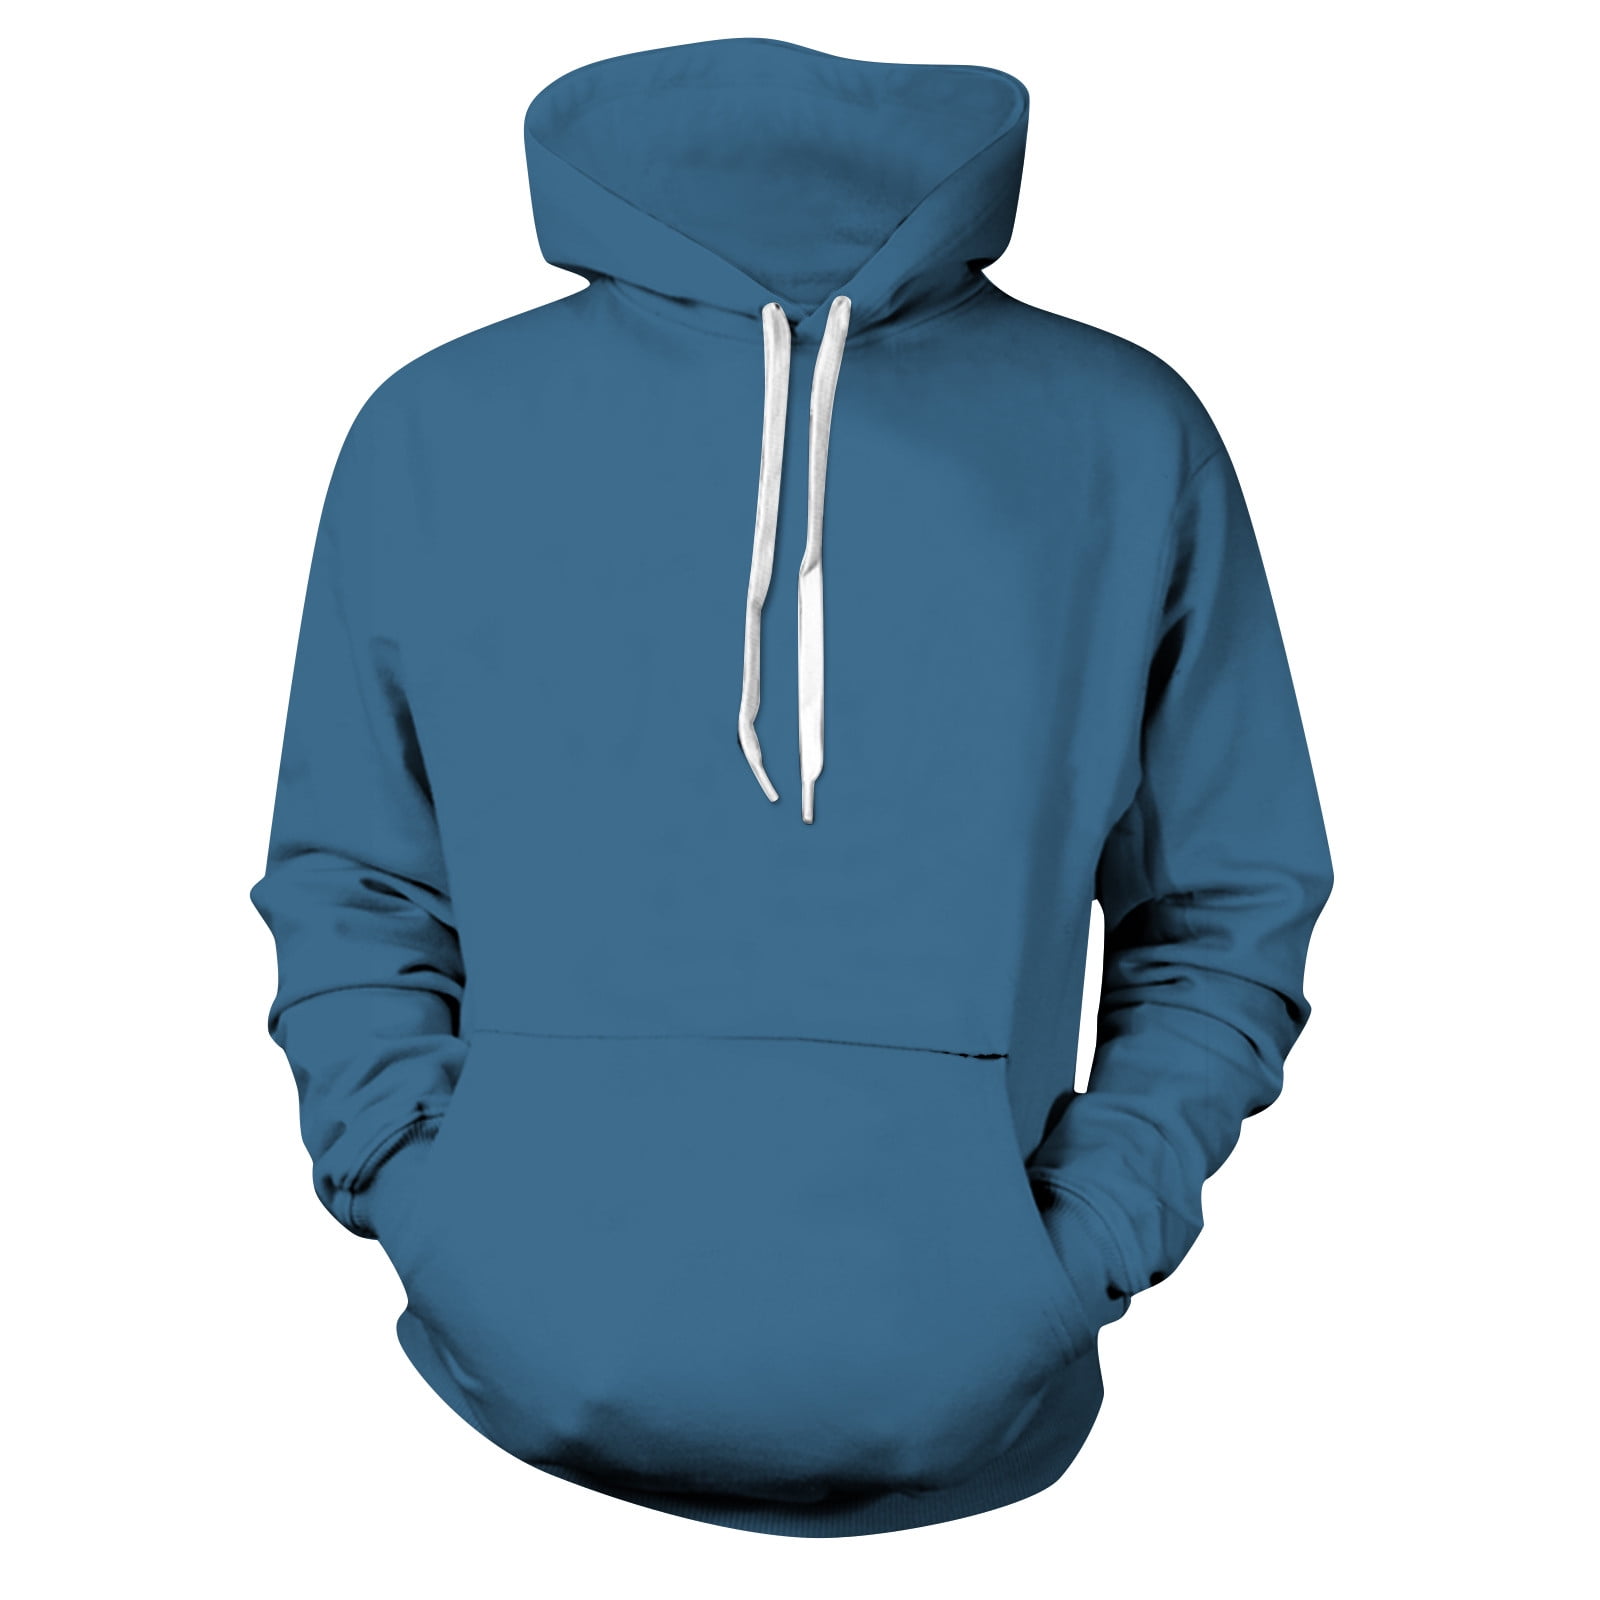 Buy Men Blue Solid Hooded Neck Sweatshirt Online - 759328